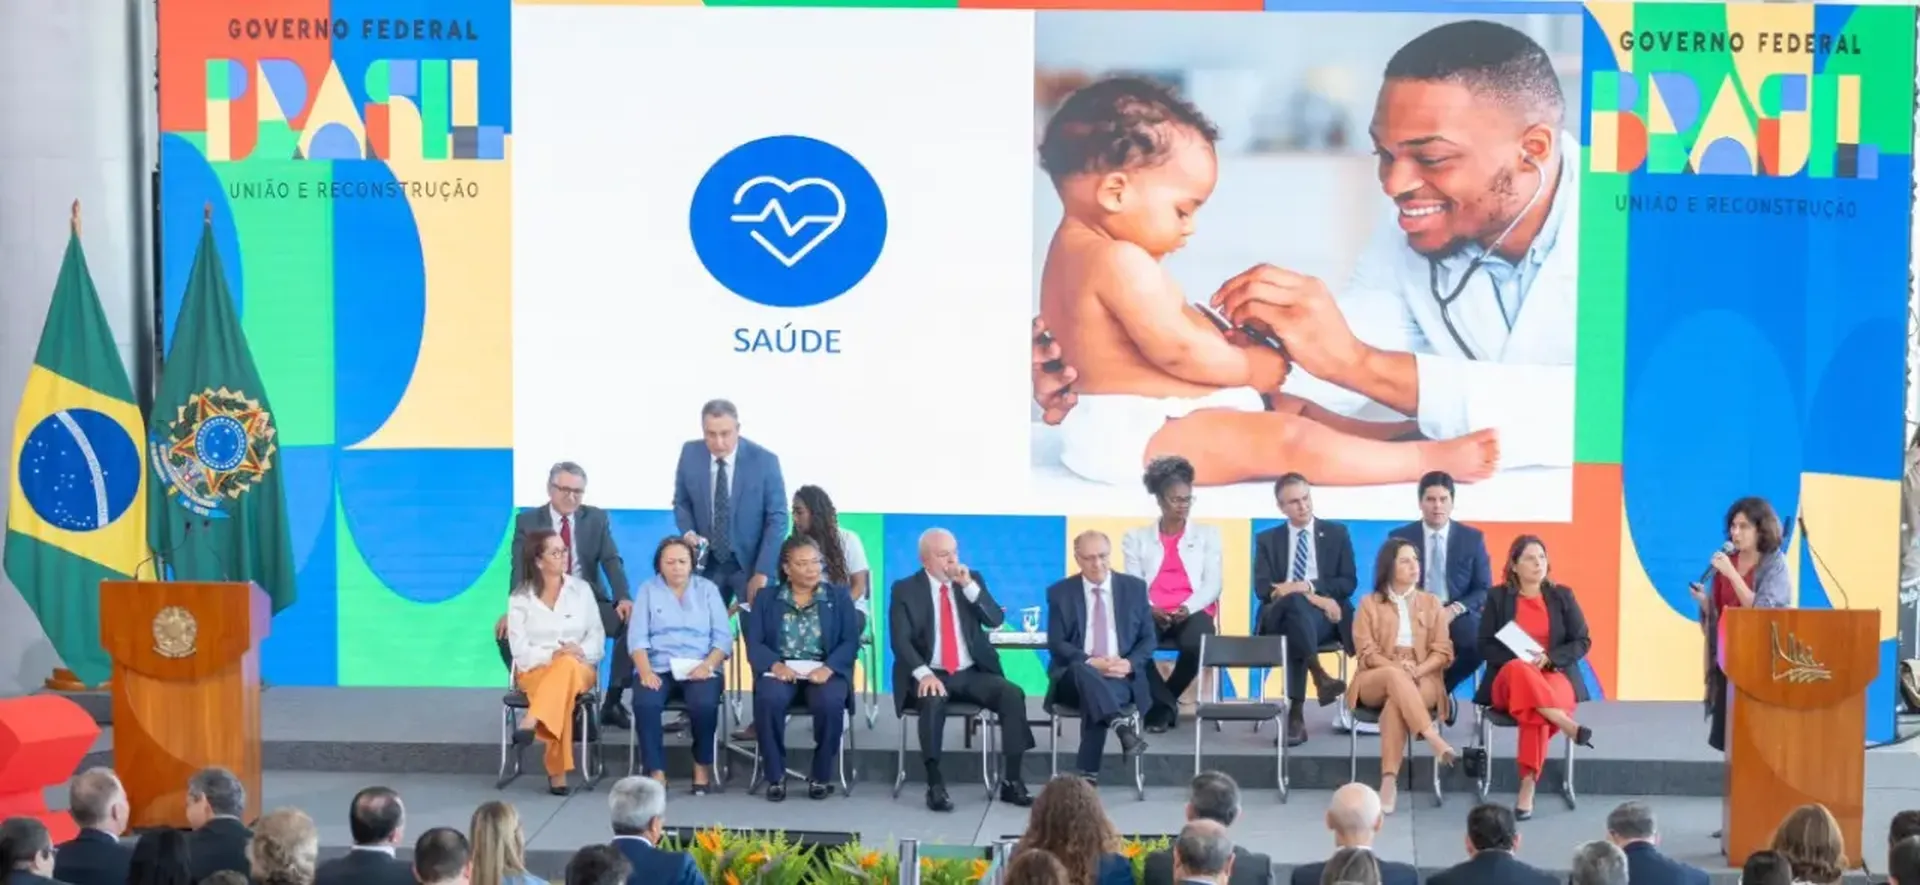 Novo PAC Seleções investe R$ 23 bilhões em saúde, educação, esporte e cultura